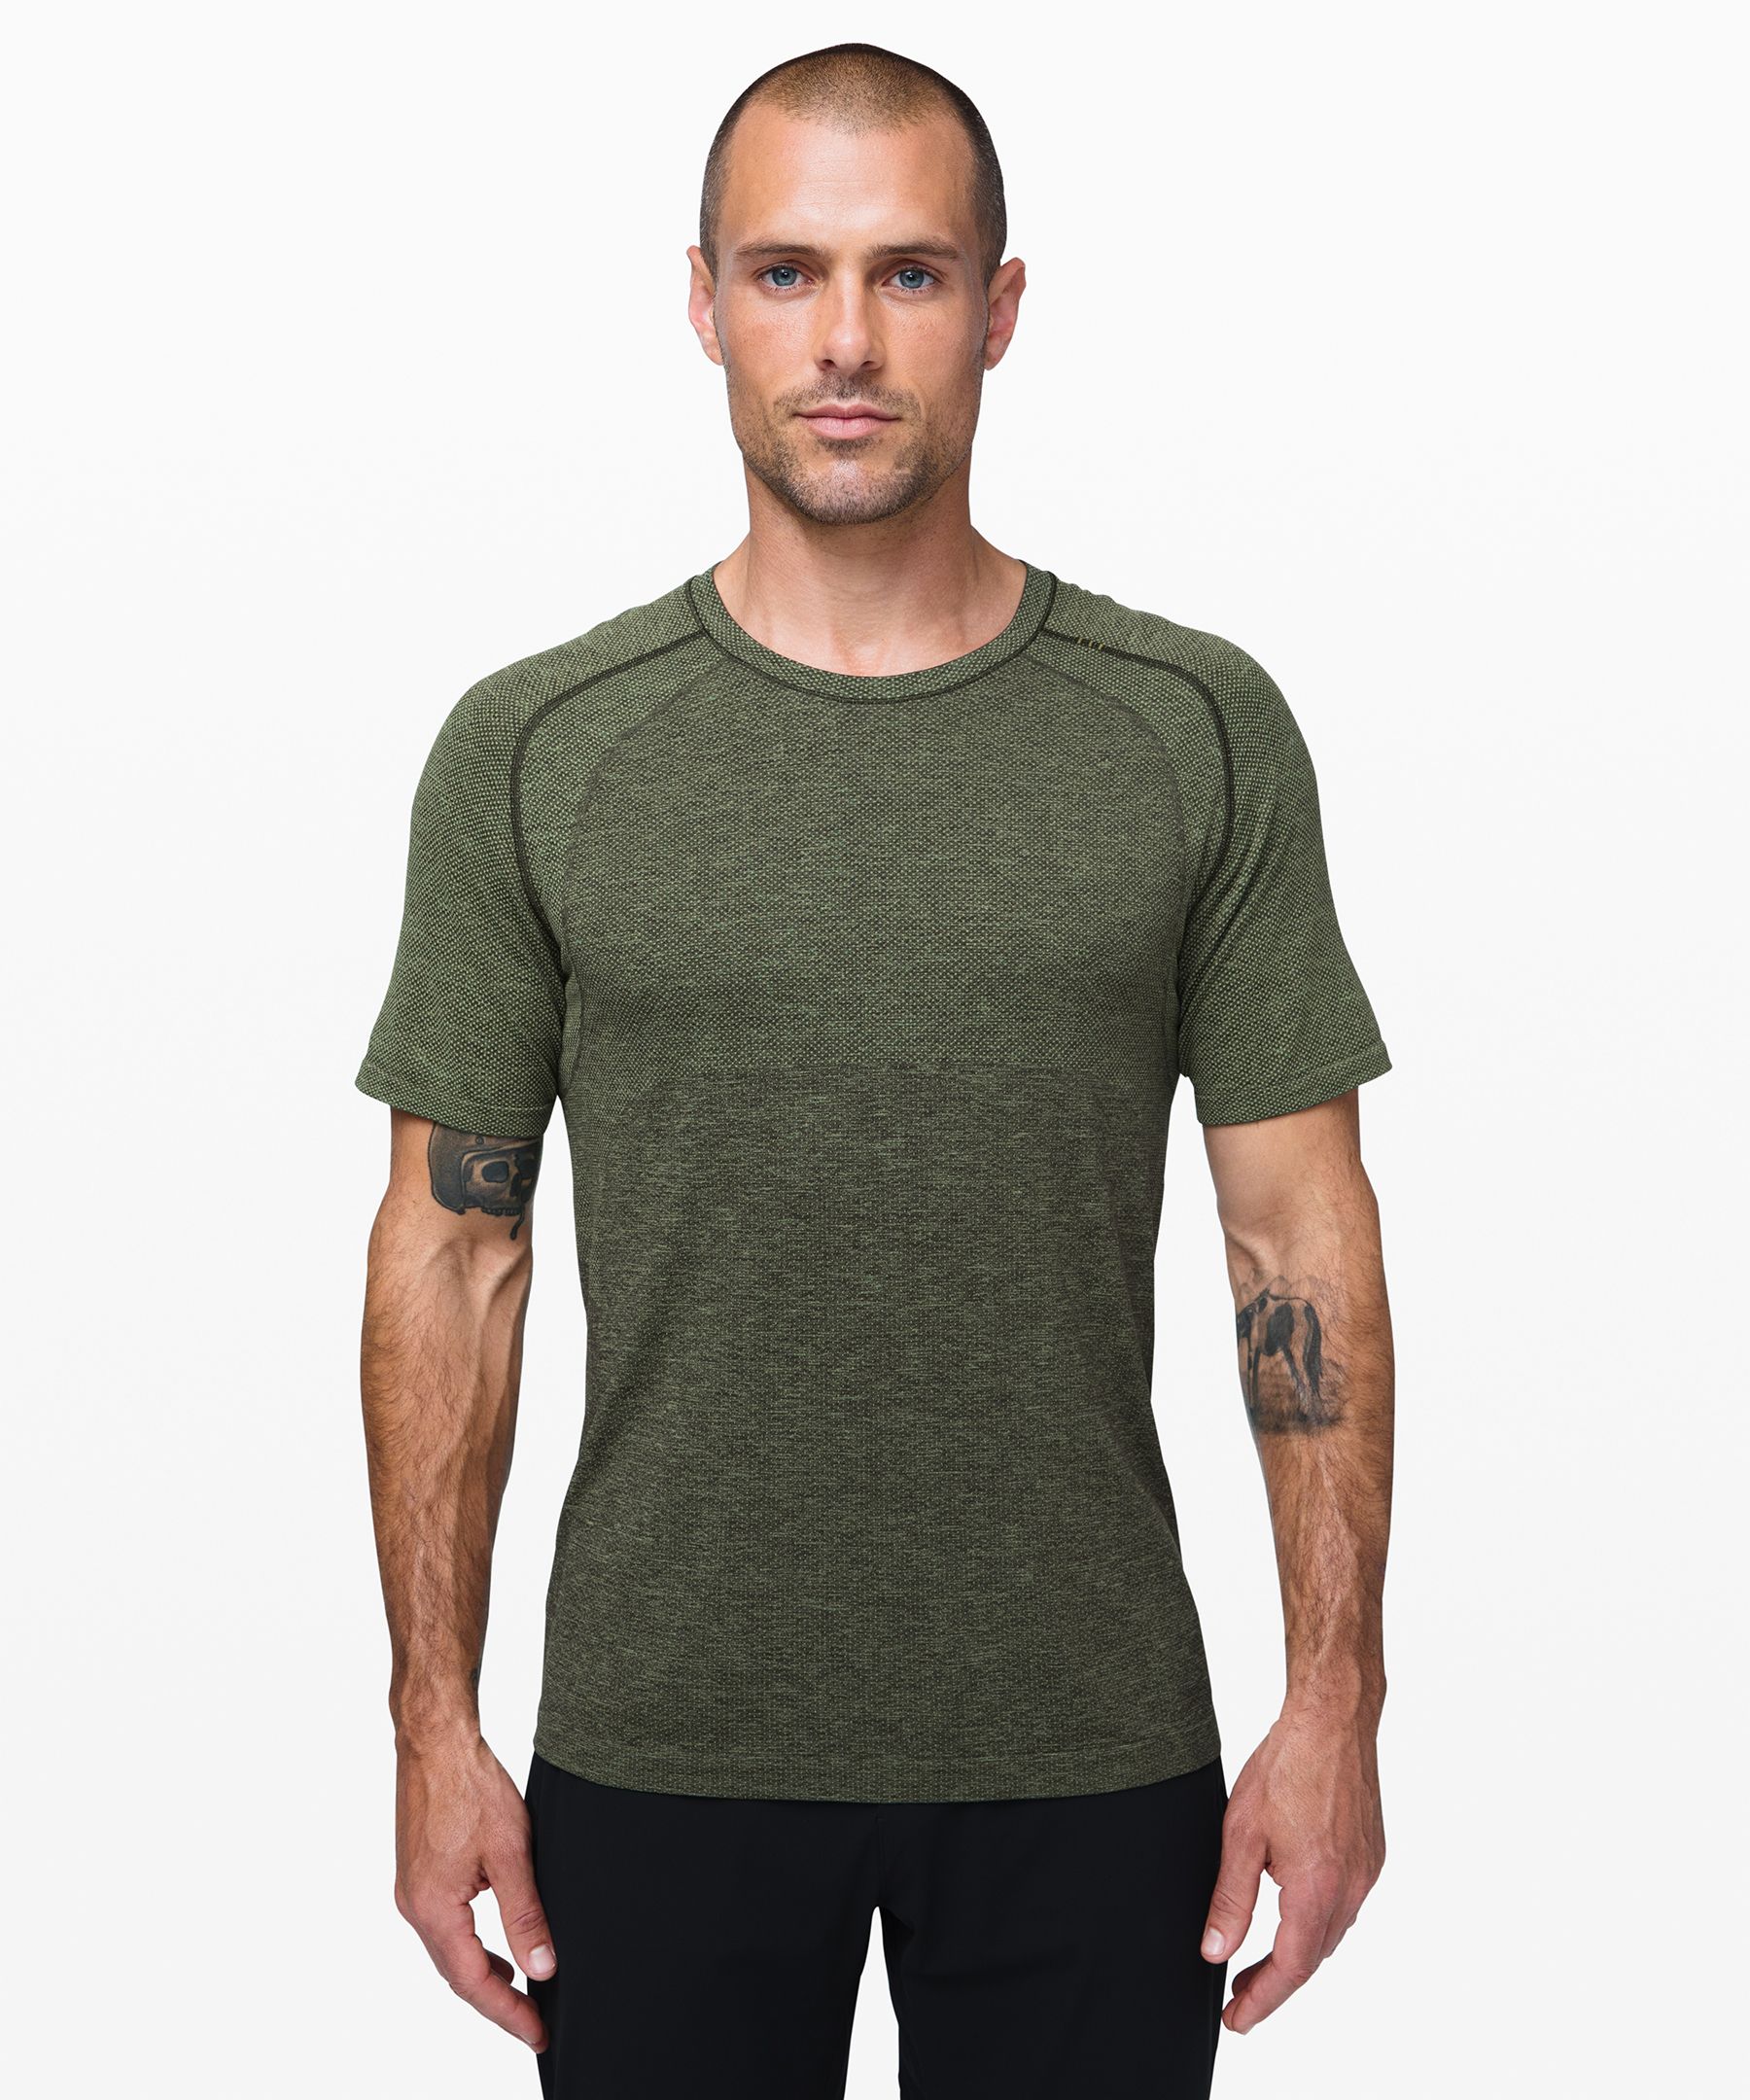 Lululemon Metal Vent Tech Long Sleeve Shirt 2.0 - Rainforest Green